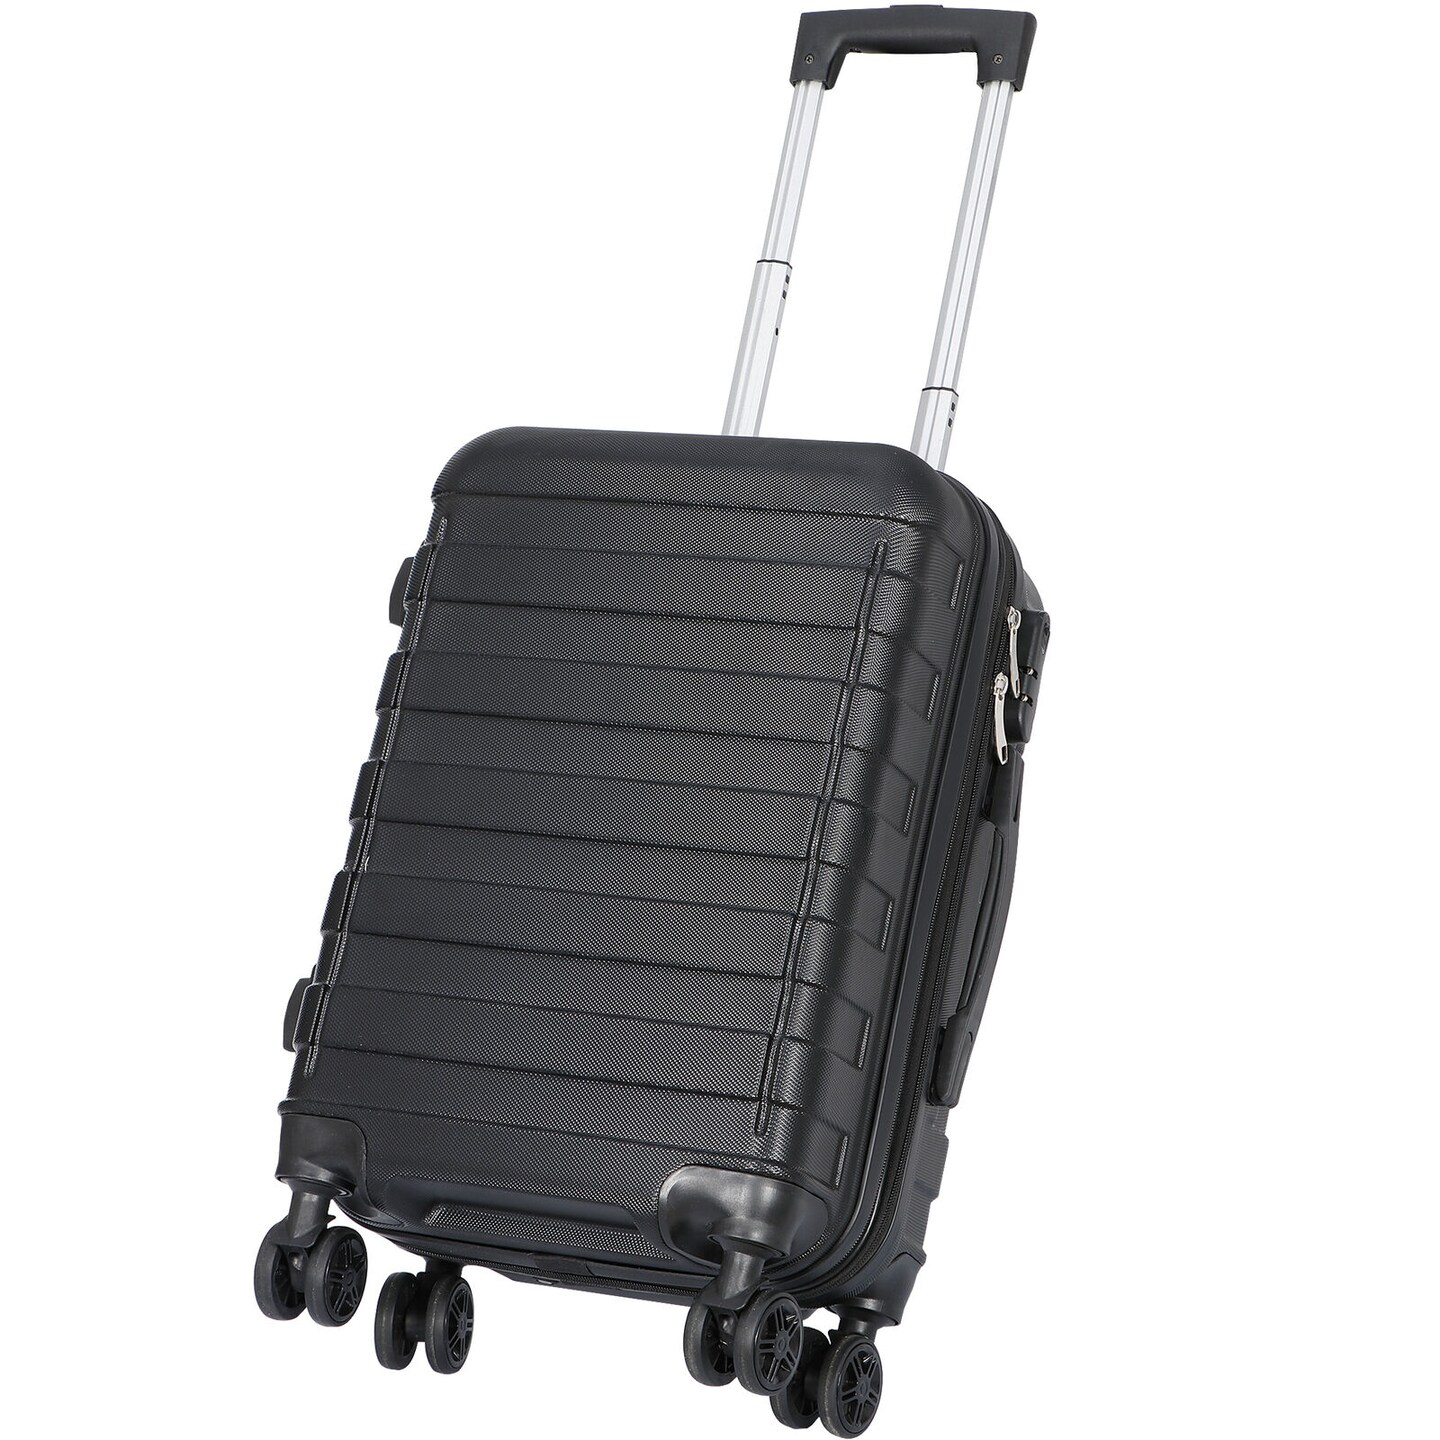 Hardside Expandable Carry-On Suitcase Luggage